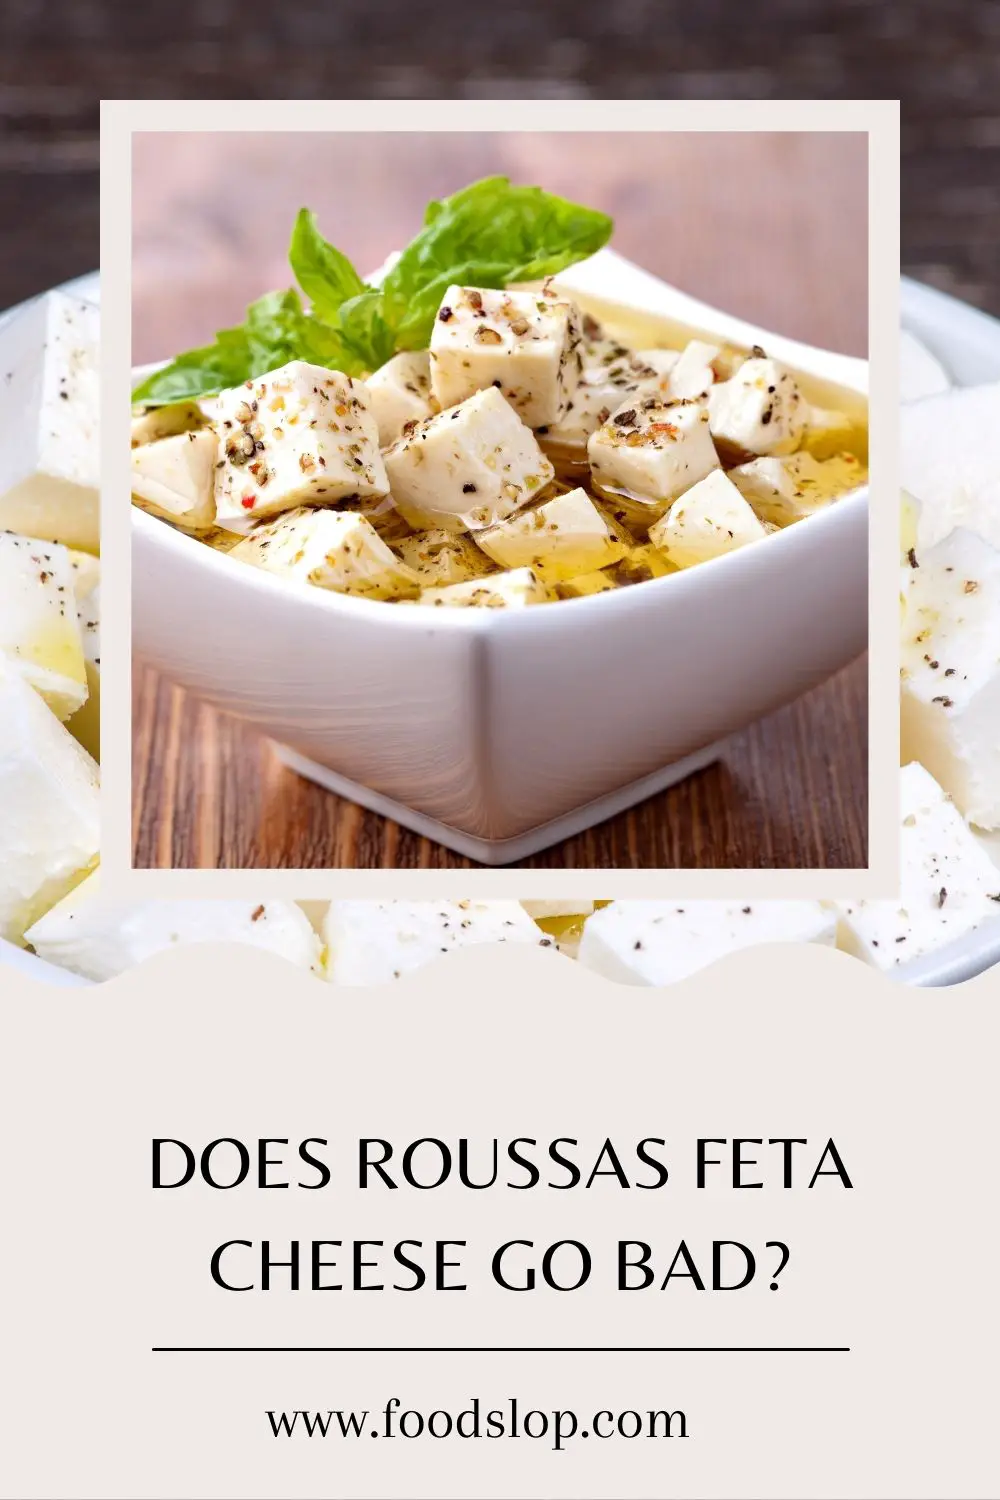 Does Roussas Feta Cheese Go Bad?